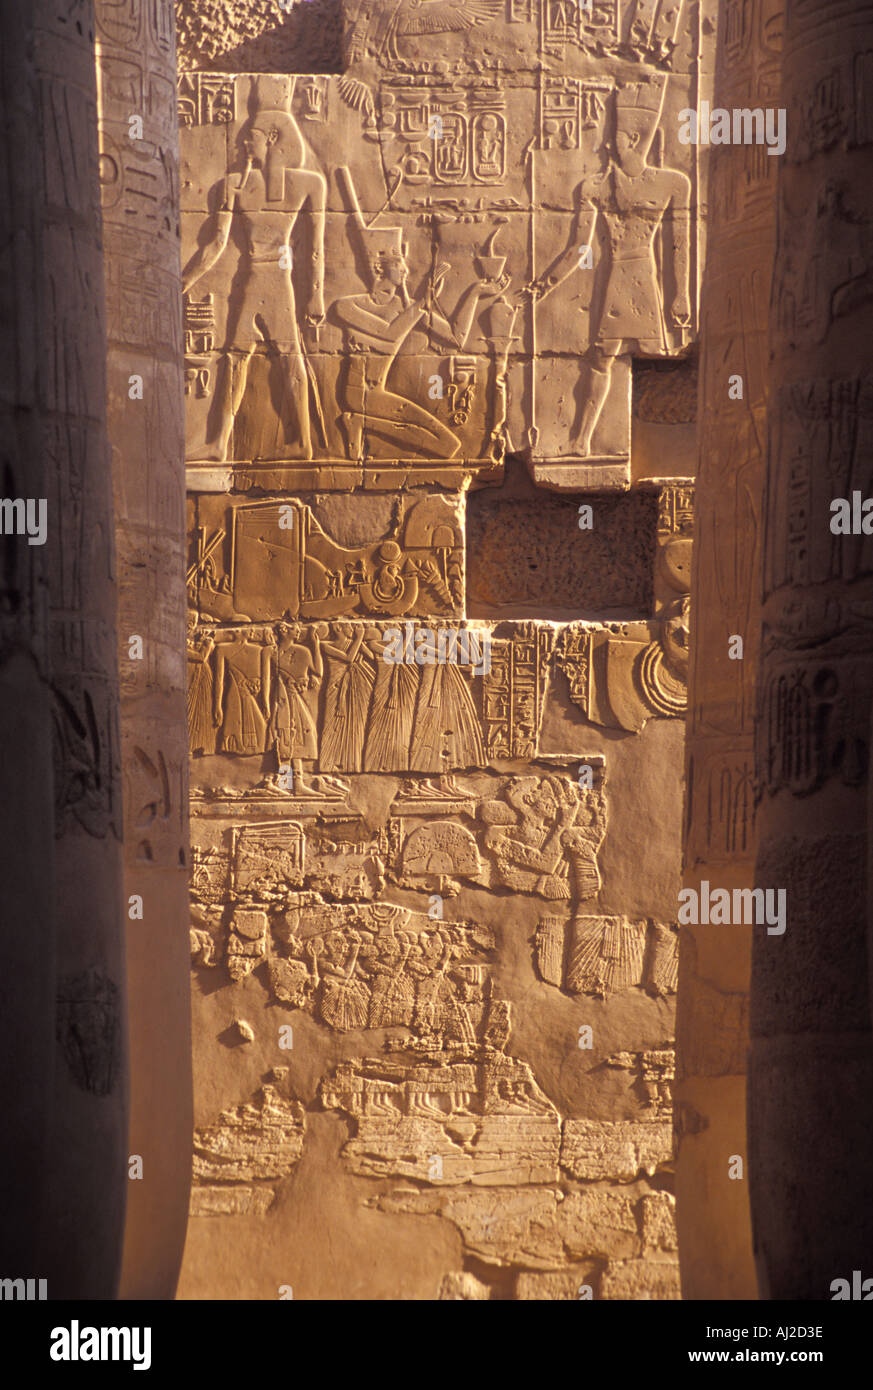 Ornate Walls of the Karnak Temple near Luxor, Egypt Stock Photo